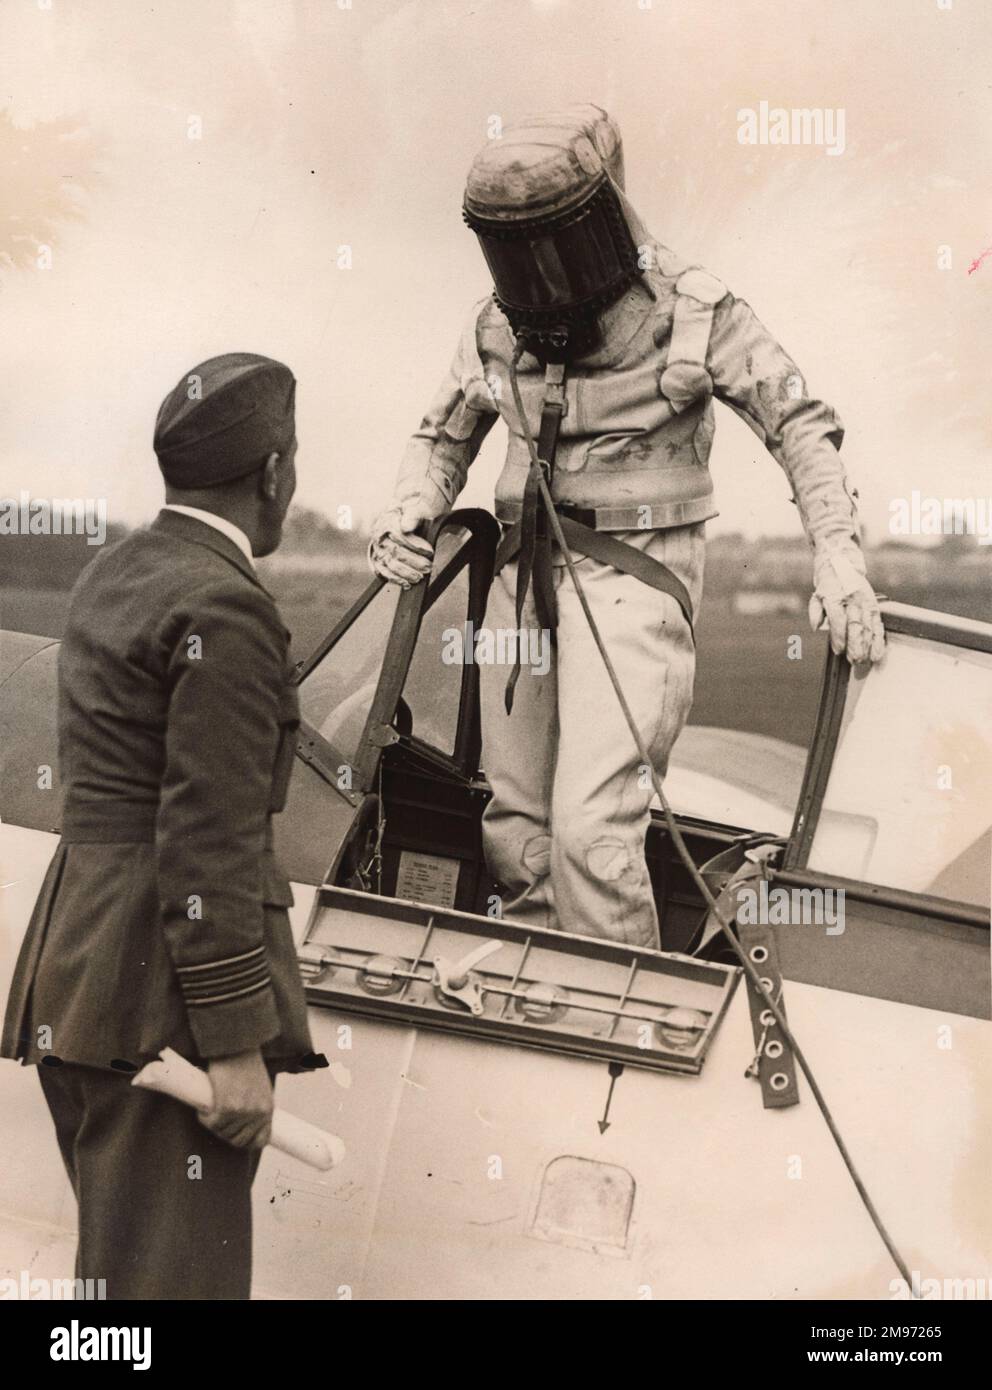 SQN LDR F.R.D. Swain von der Royal Aircraft Establishment – Experimental Section in der Pressure Suite von Siebe, Gorman and Company Ltd., in der er am 28. September 1936 in Bristol 138a, K4879 den weltweiten Höhenrekord von 49.967ft m erreichte. Stockfoto